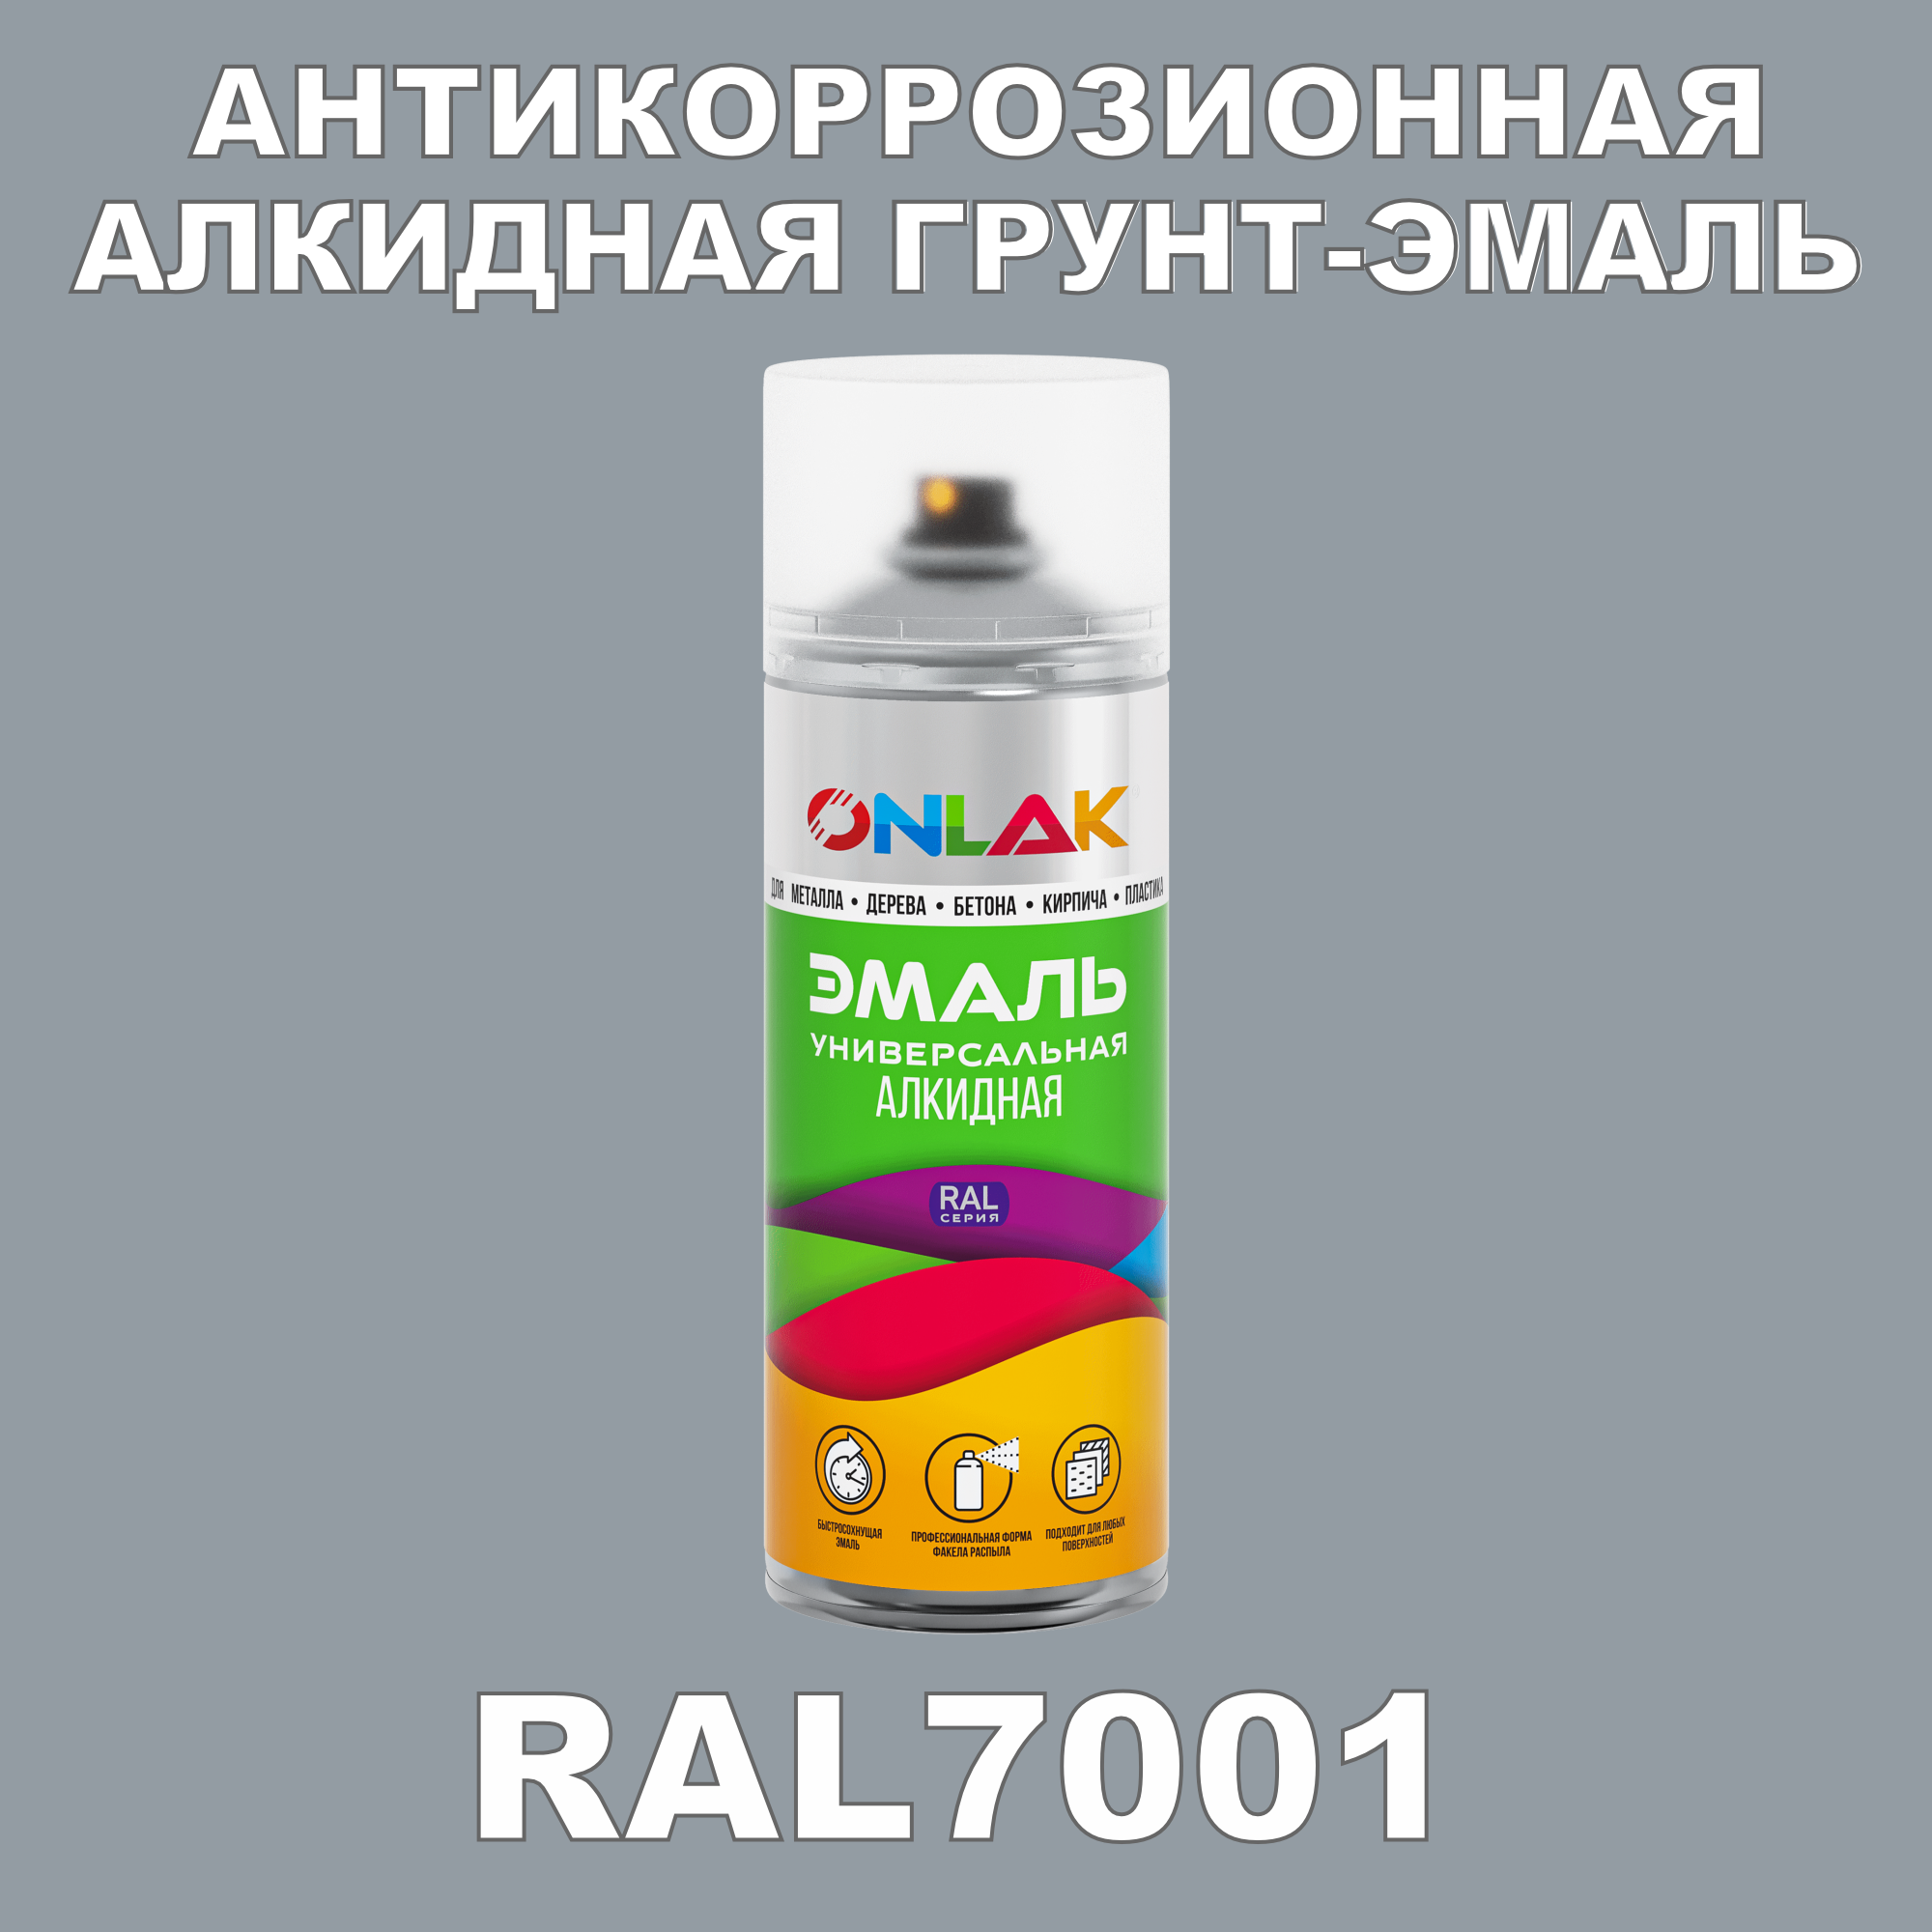 Антикоррозионная грунт-эмаль ONLAK RAL7001 полуматовая для металла и защиты от ржавчины